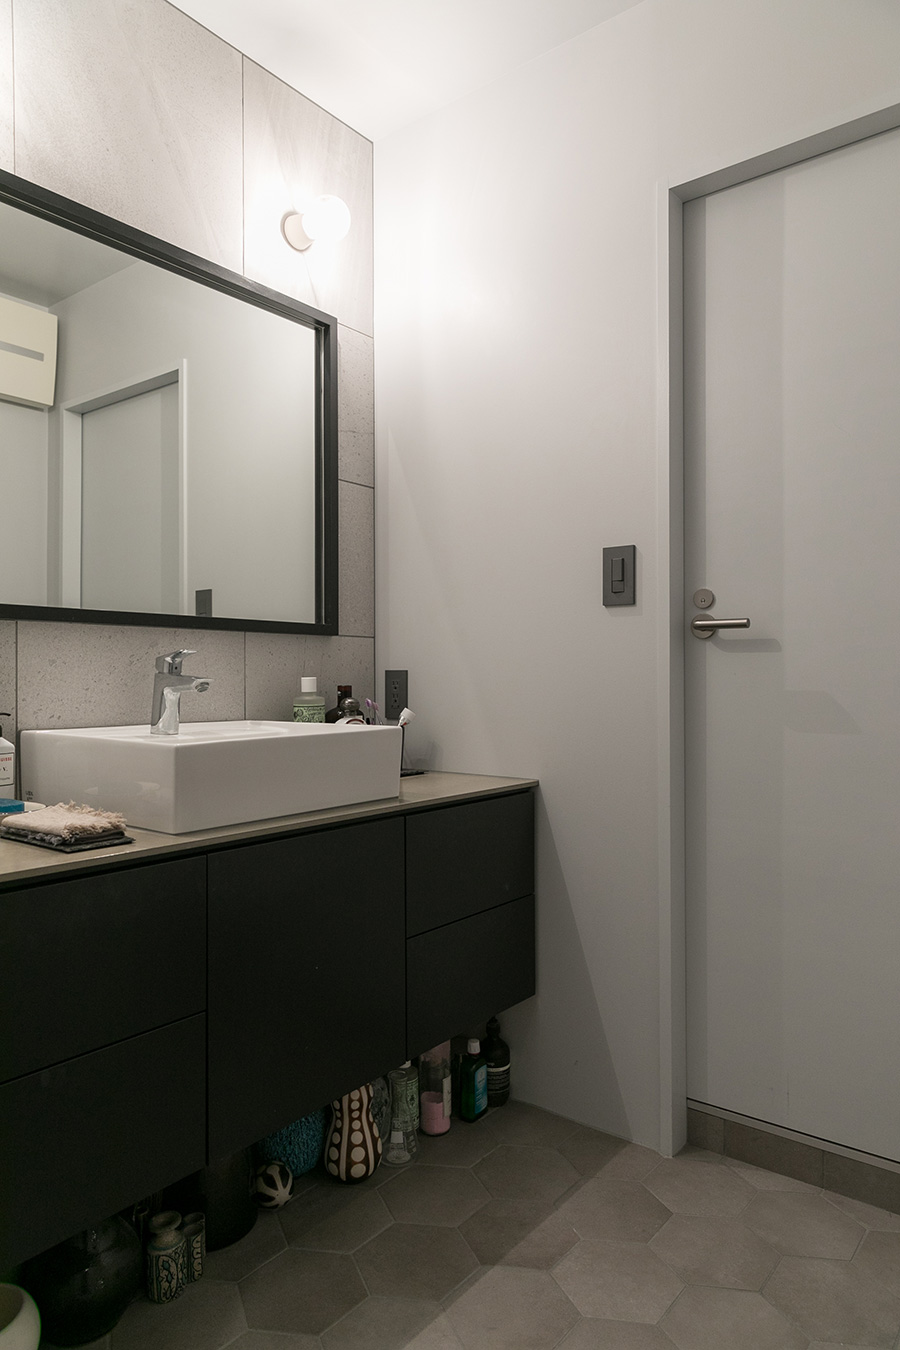 大きめのタイルを張った壁と、黒の縁の鏡がシックな洗面所。